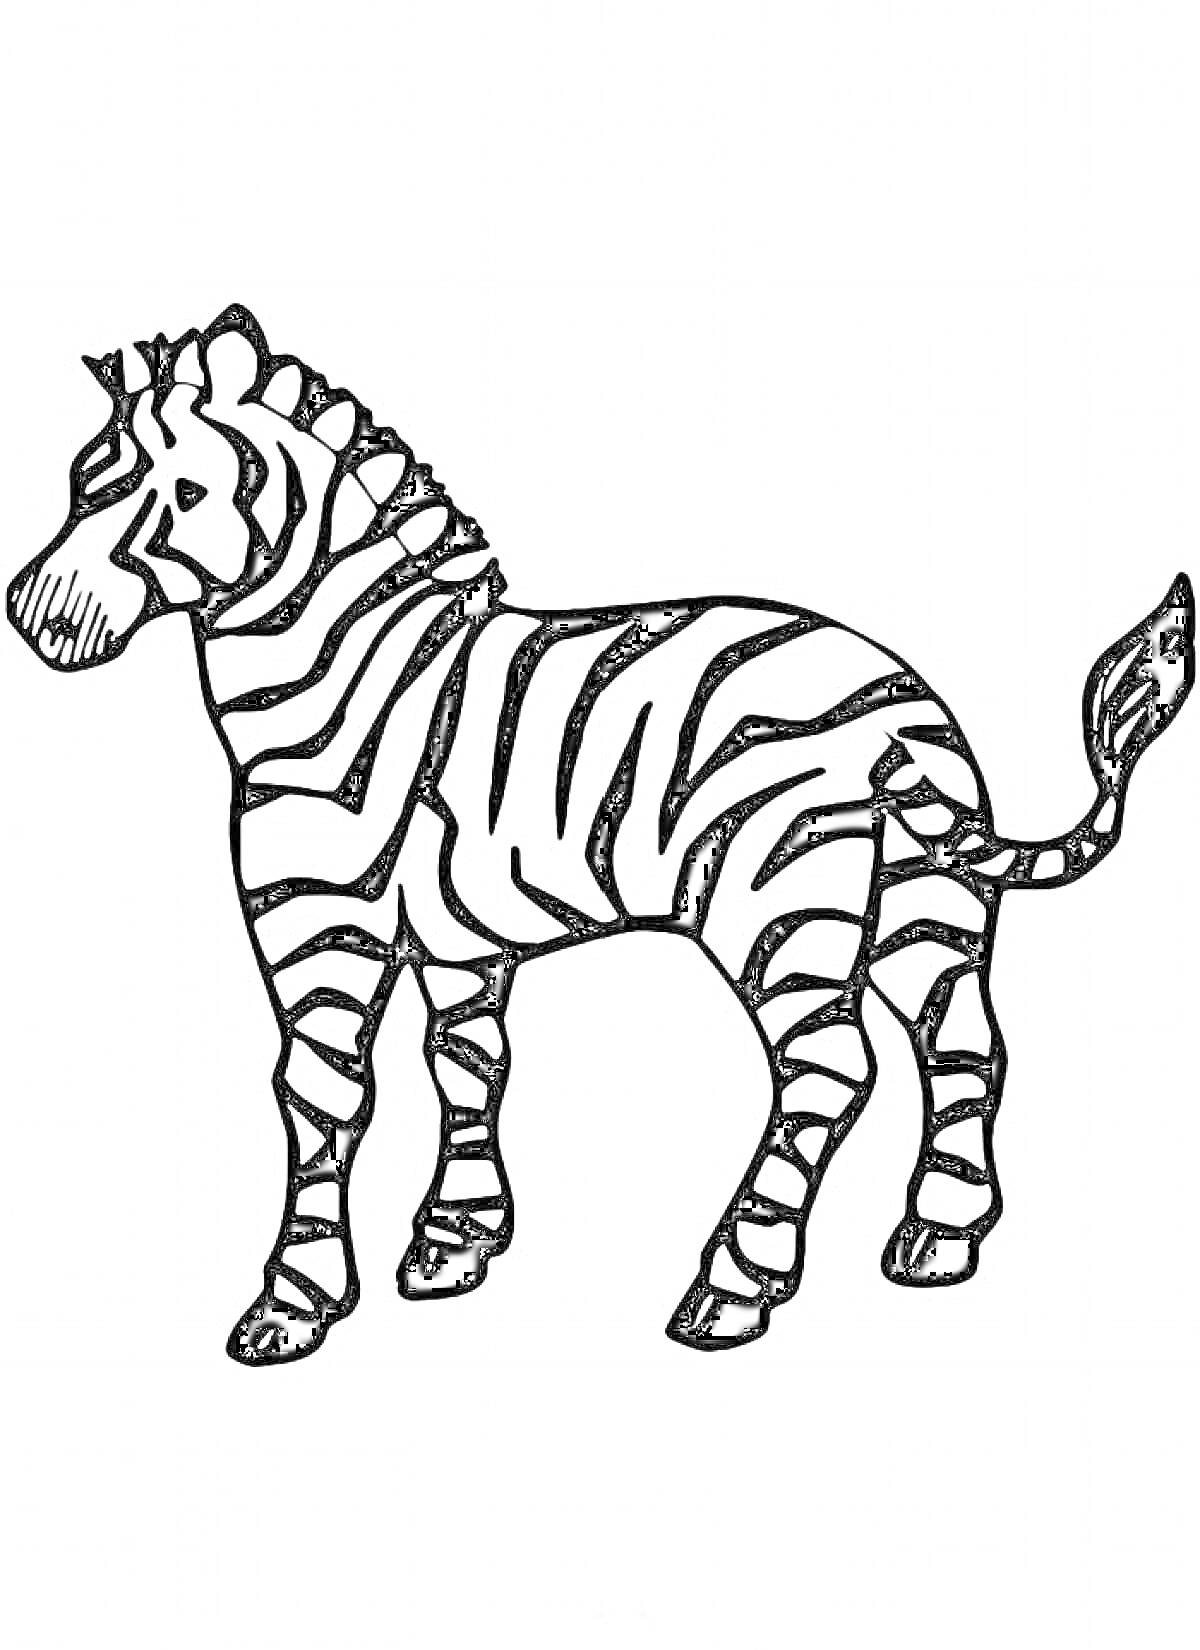 Раскраска Зебра стоящая в профиль с полосатым рисунком на теле и поднятым хвостом